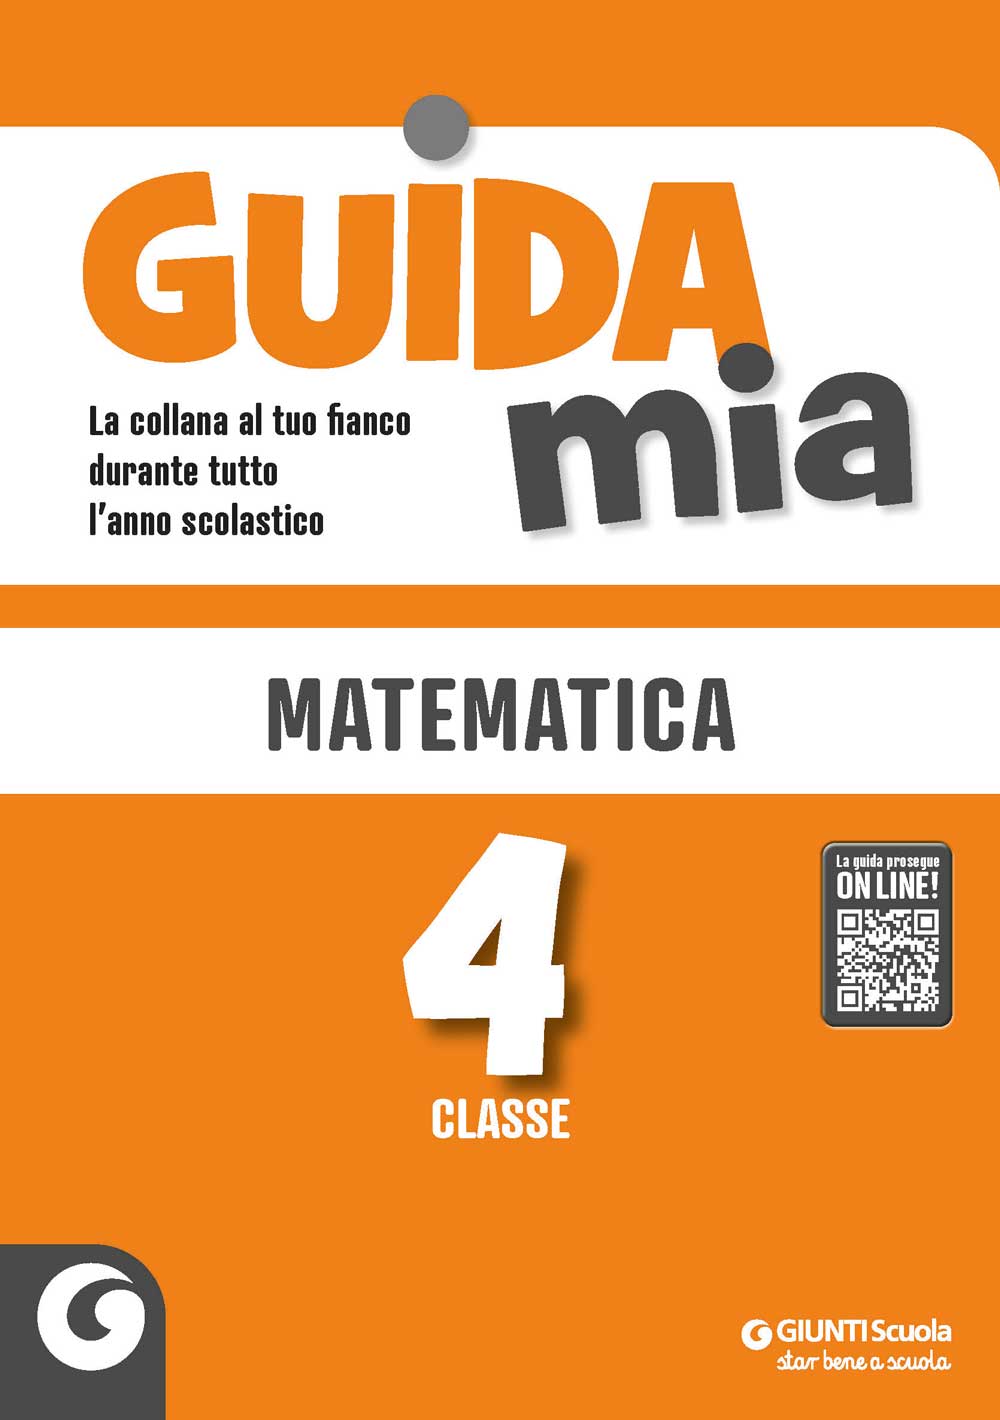 Guida Mia - Matematica classe 4 | Giunti Scuola